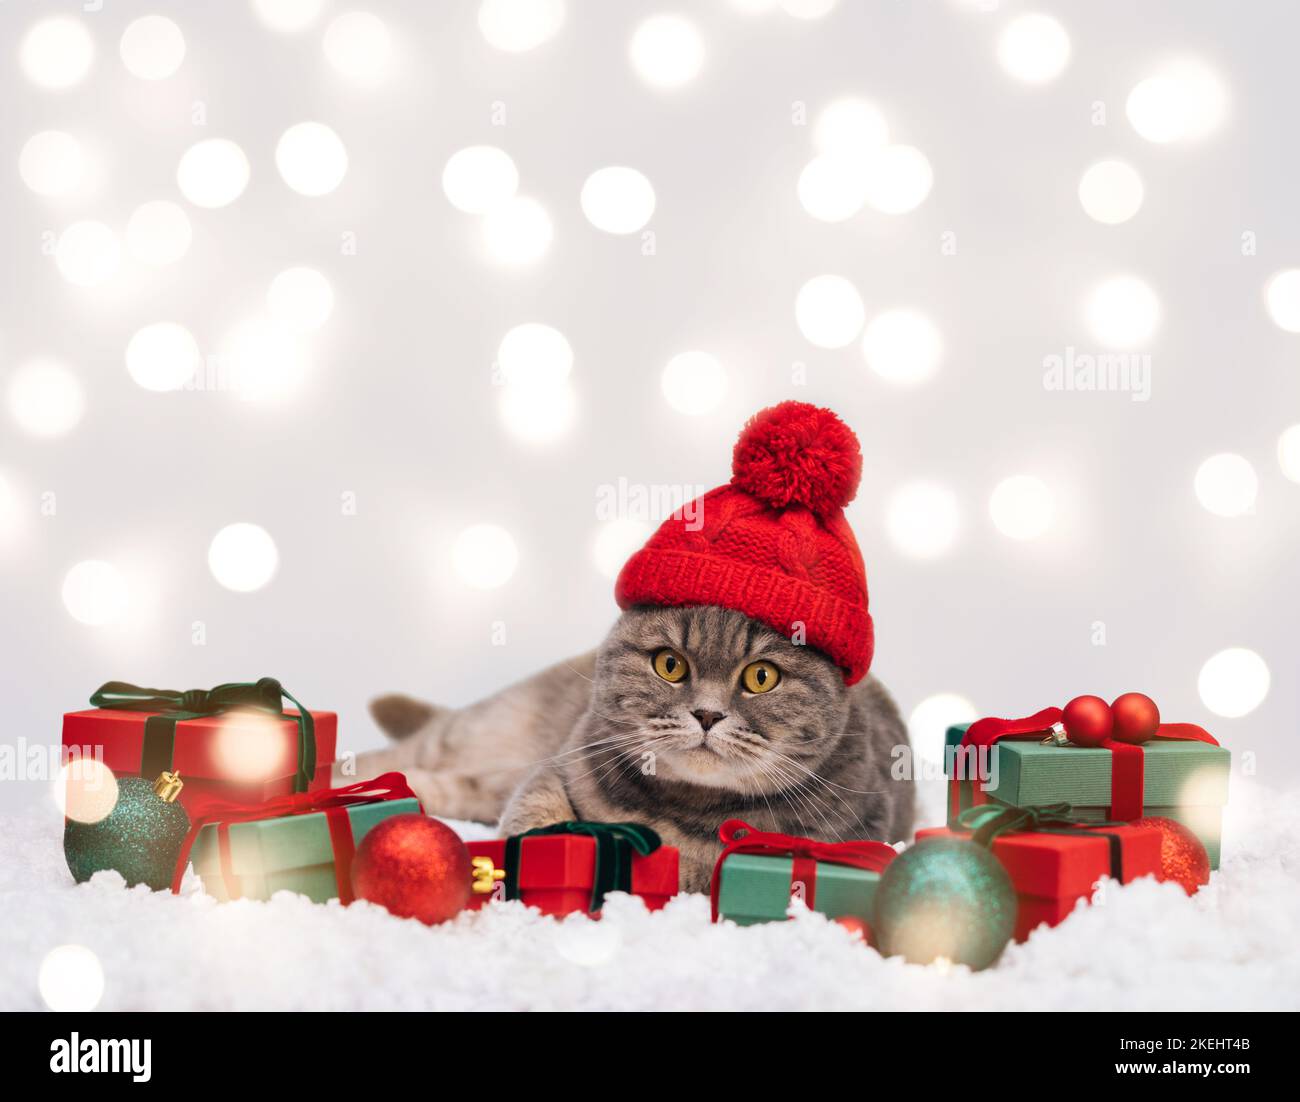 Gatto in cappello rosso con regali sullo sfondo invernale di Natale. Gatto scozzese con decorazioni natalizie nella neve. Biglietto di auguri per il nuovo anno. Spazio per il testo. Foto Stock